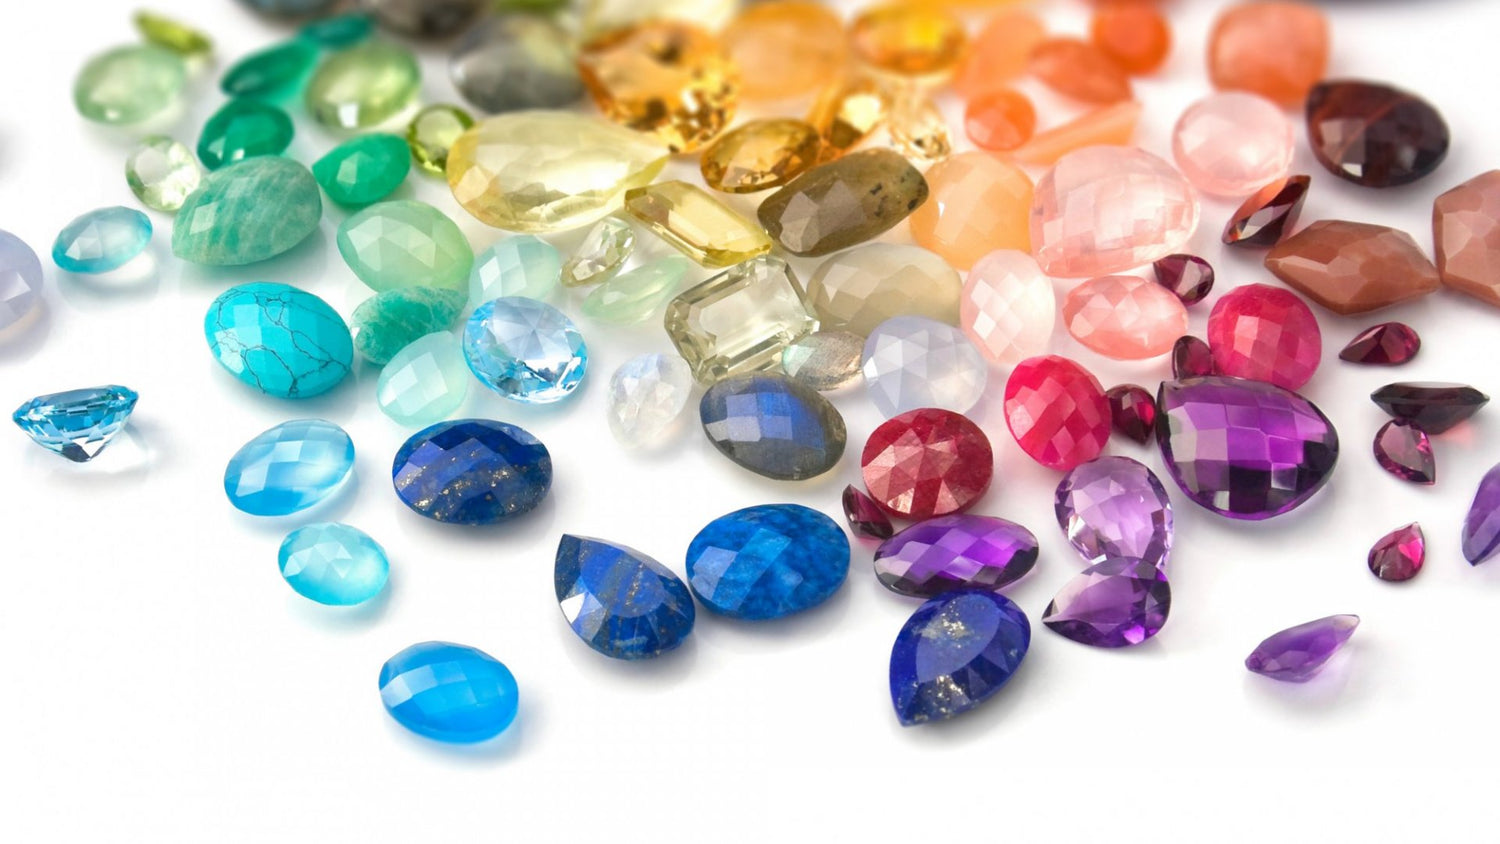 Premium Quality Gemstone Beads for Jewelry Making | Gemstone for Earring Making | Natural Gemstone Beads | Semi Precious Gemstone Beads | Fancy shape Beads | Beadsforyourjewelry